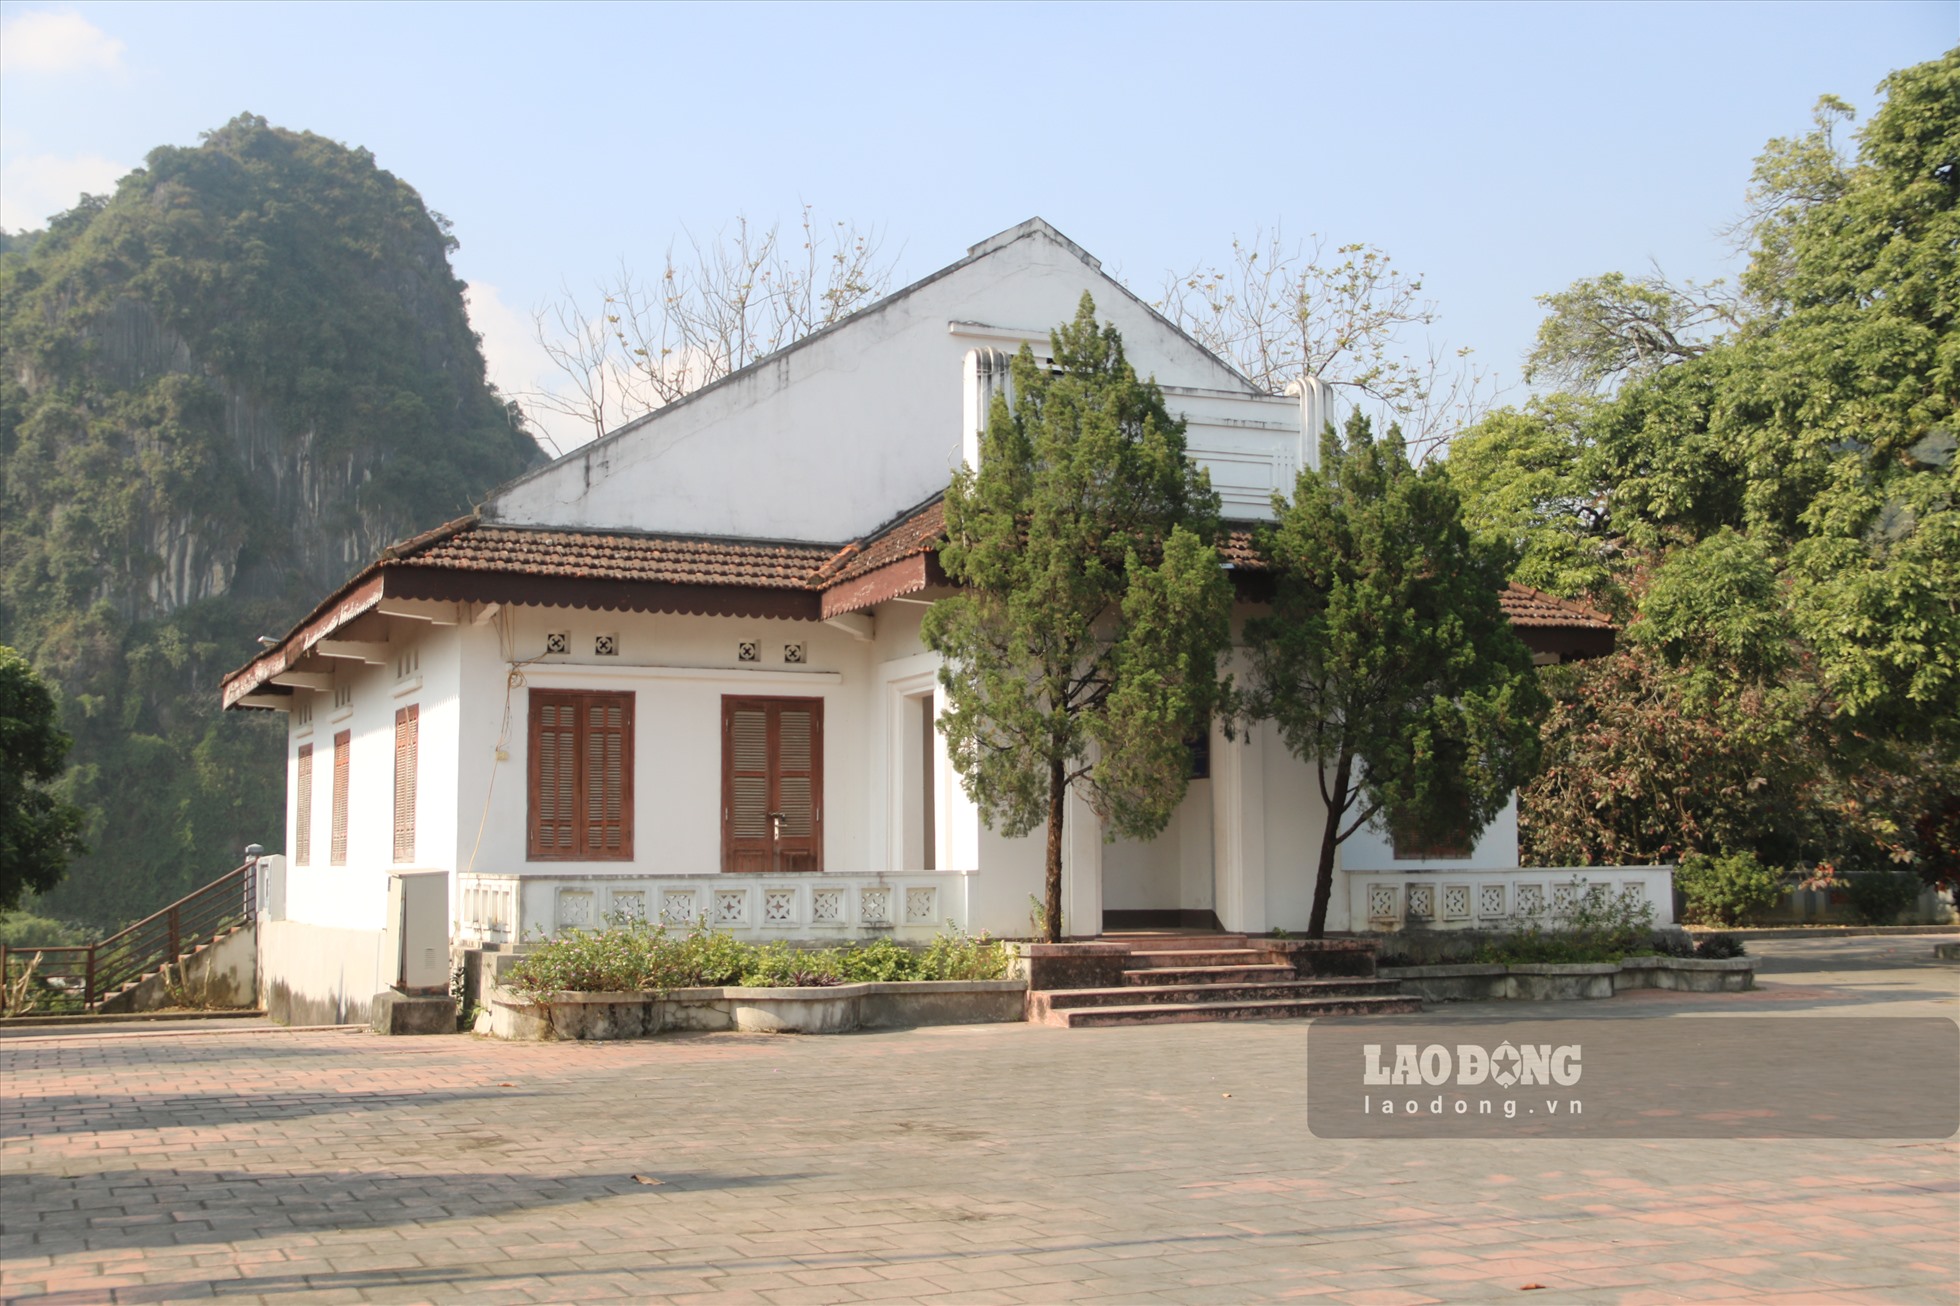 Ngược lên khoảng 500m trong khuôn viên khu di tích là ngôi nhà của vợ chồng ông Đỗ Đình Thiện.